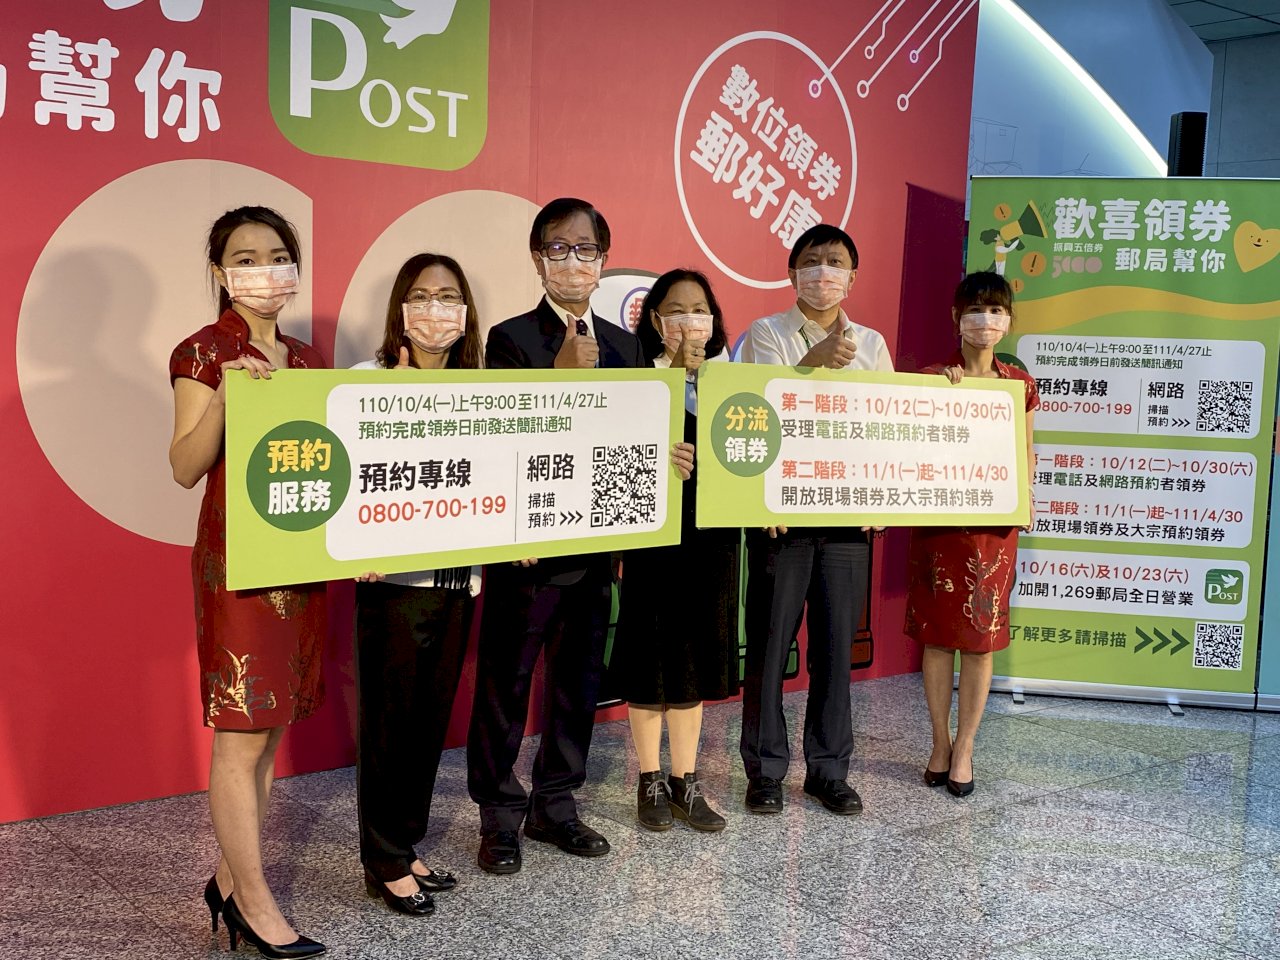 中華郵政公布領取五倍券方式 並加碼推出數位綁定優惠